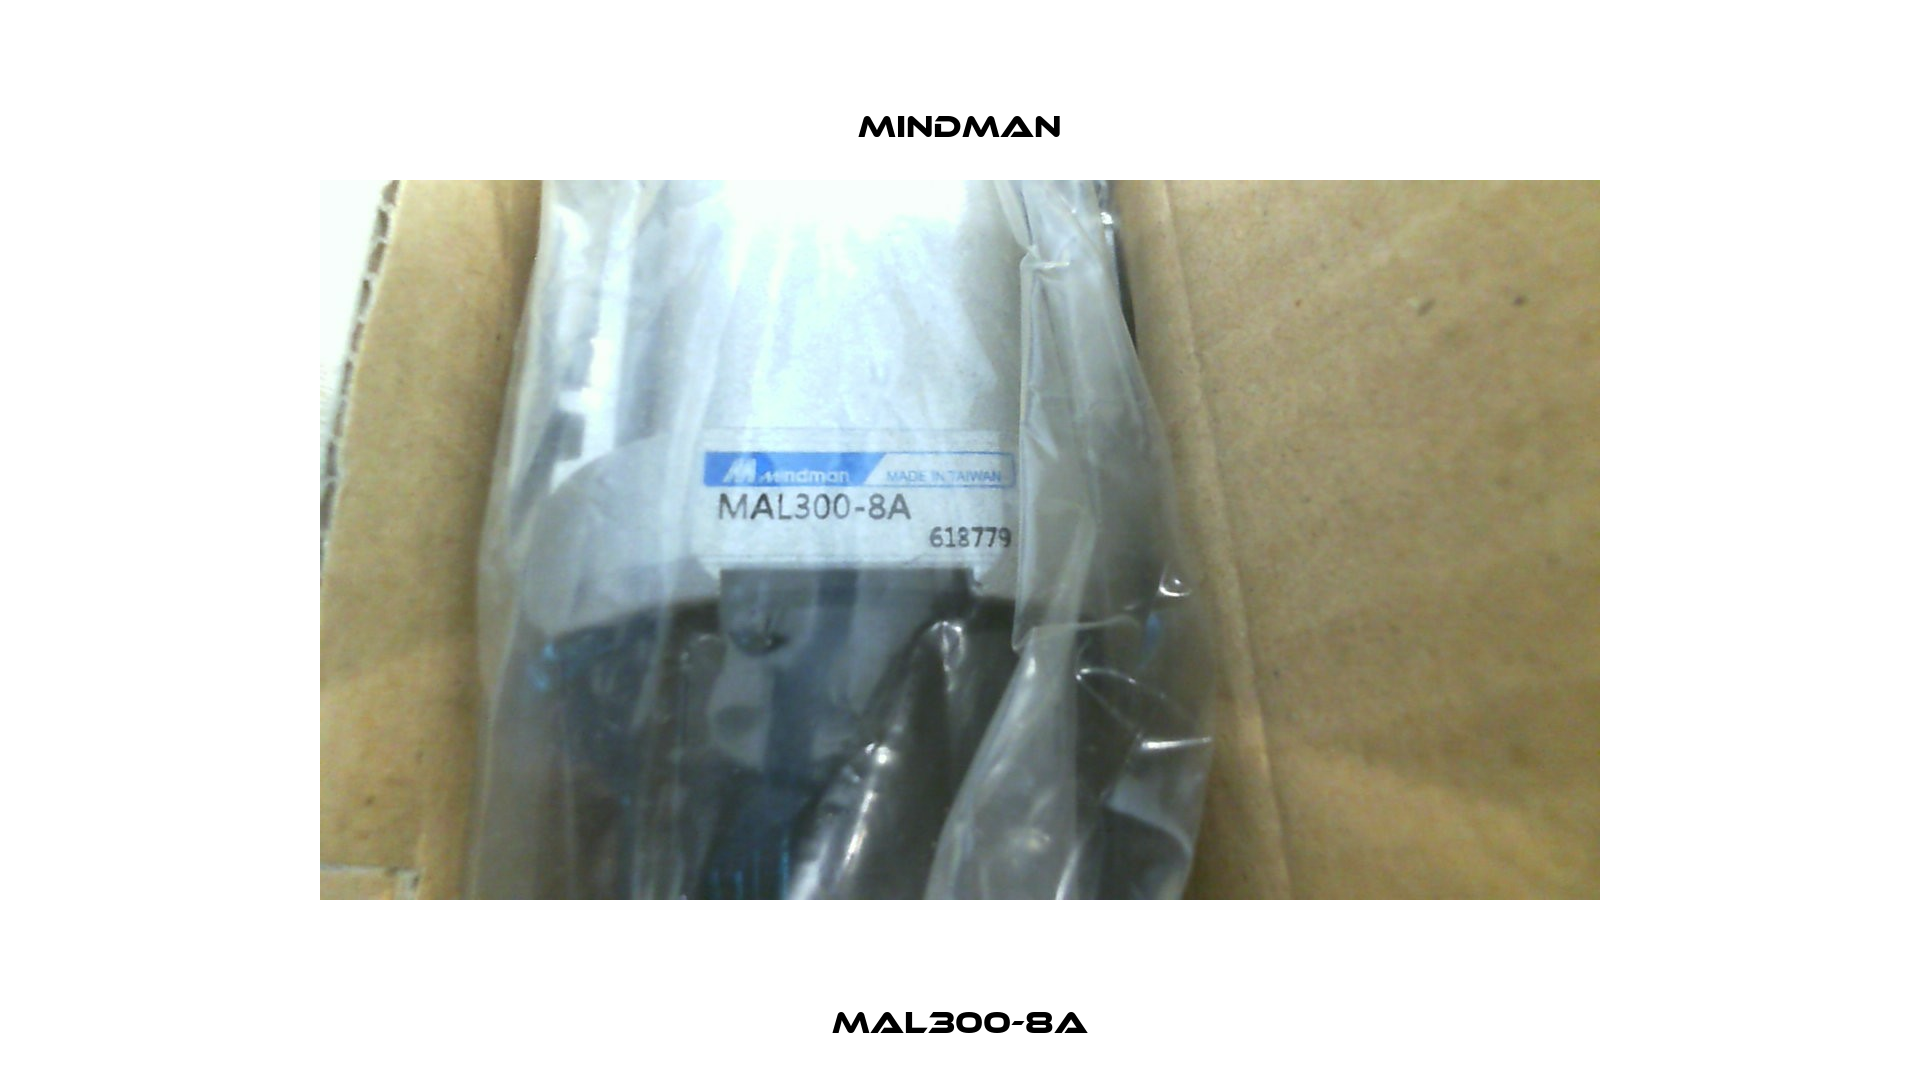 MAL300-8A Mindman